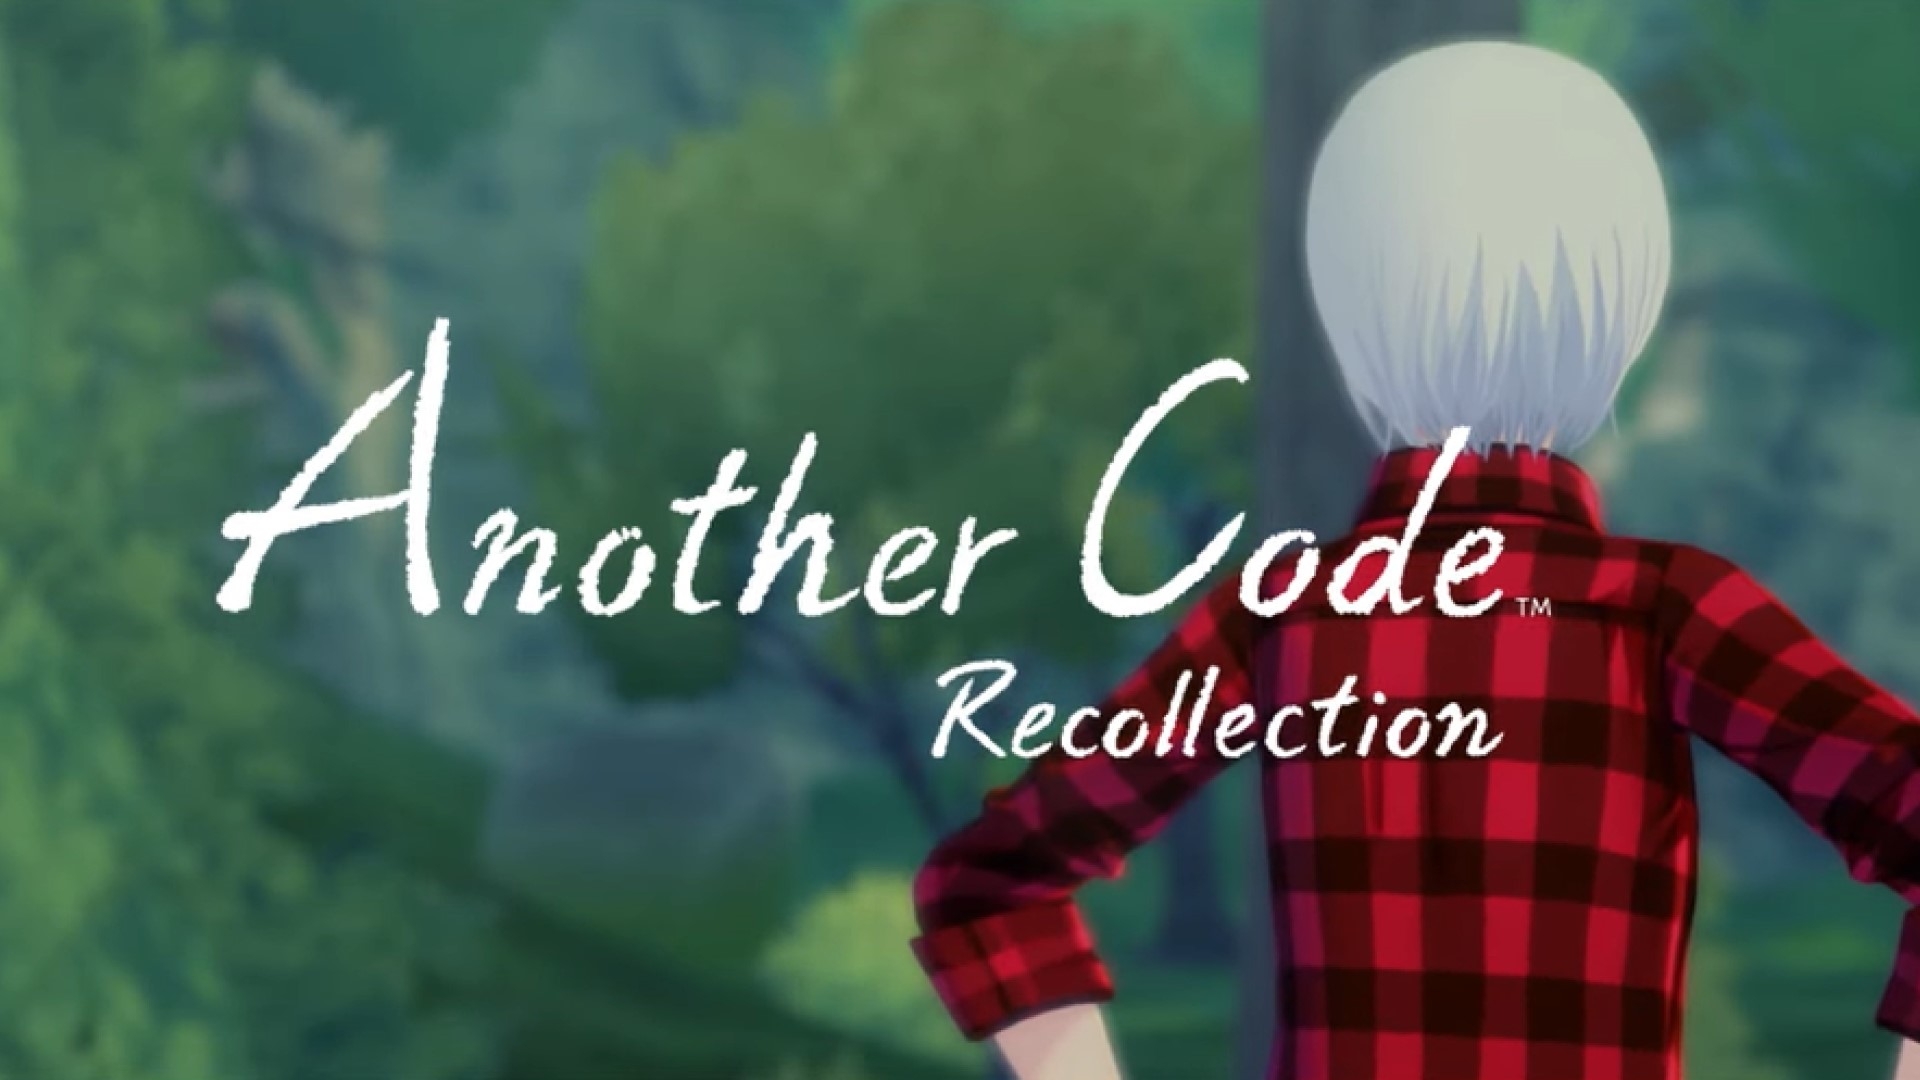 La demo di Another Code: Recollection è ora scaricabile sull'eShop Nintendo